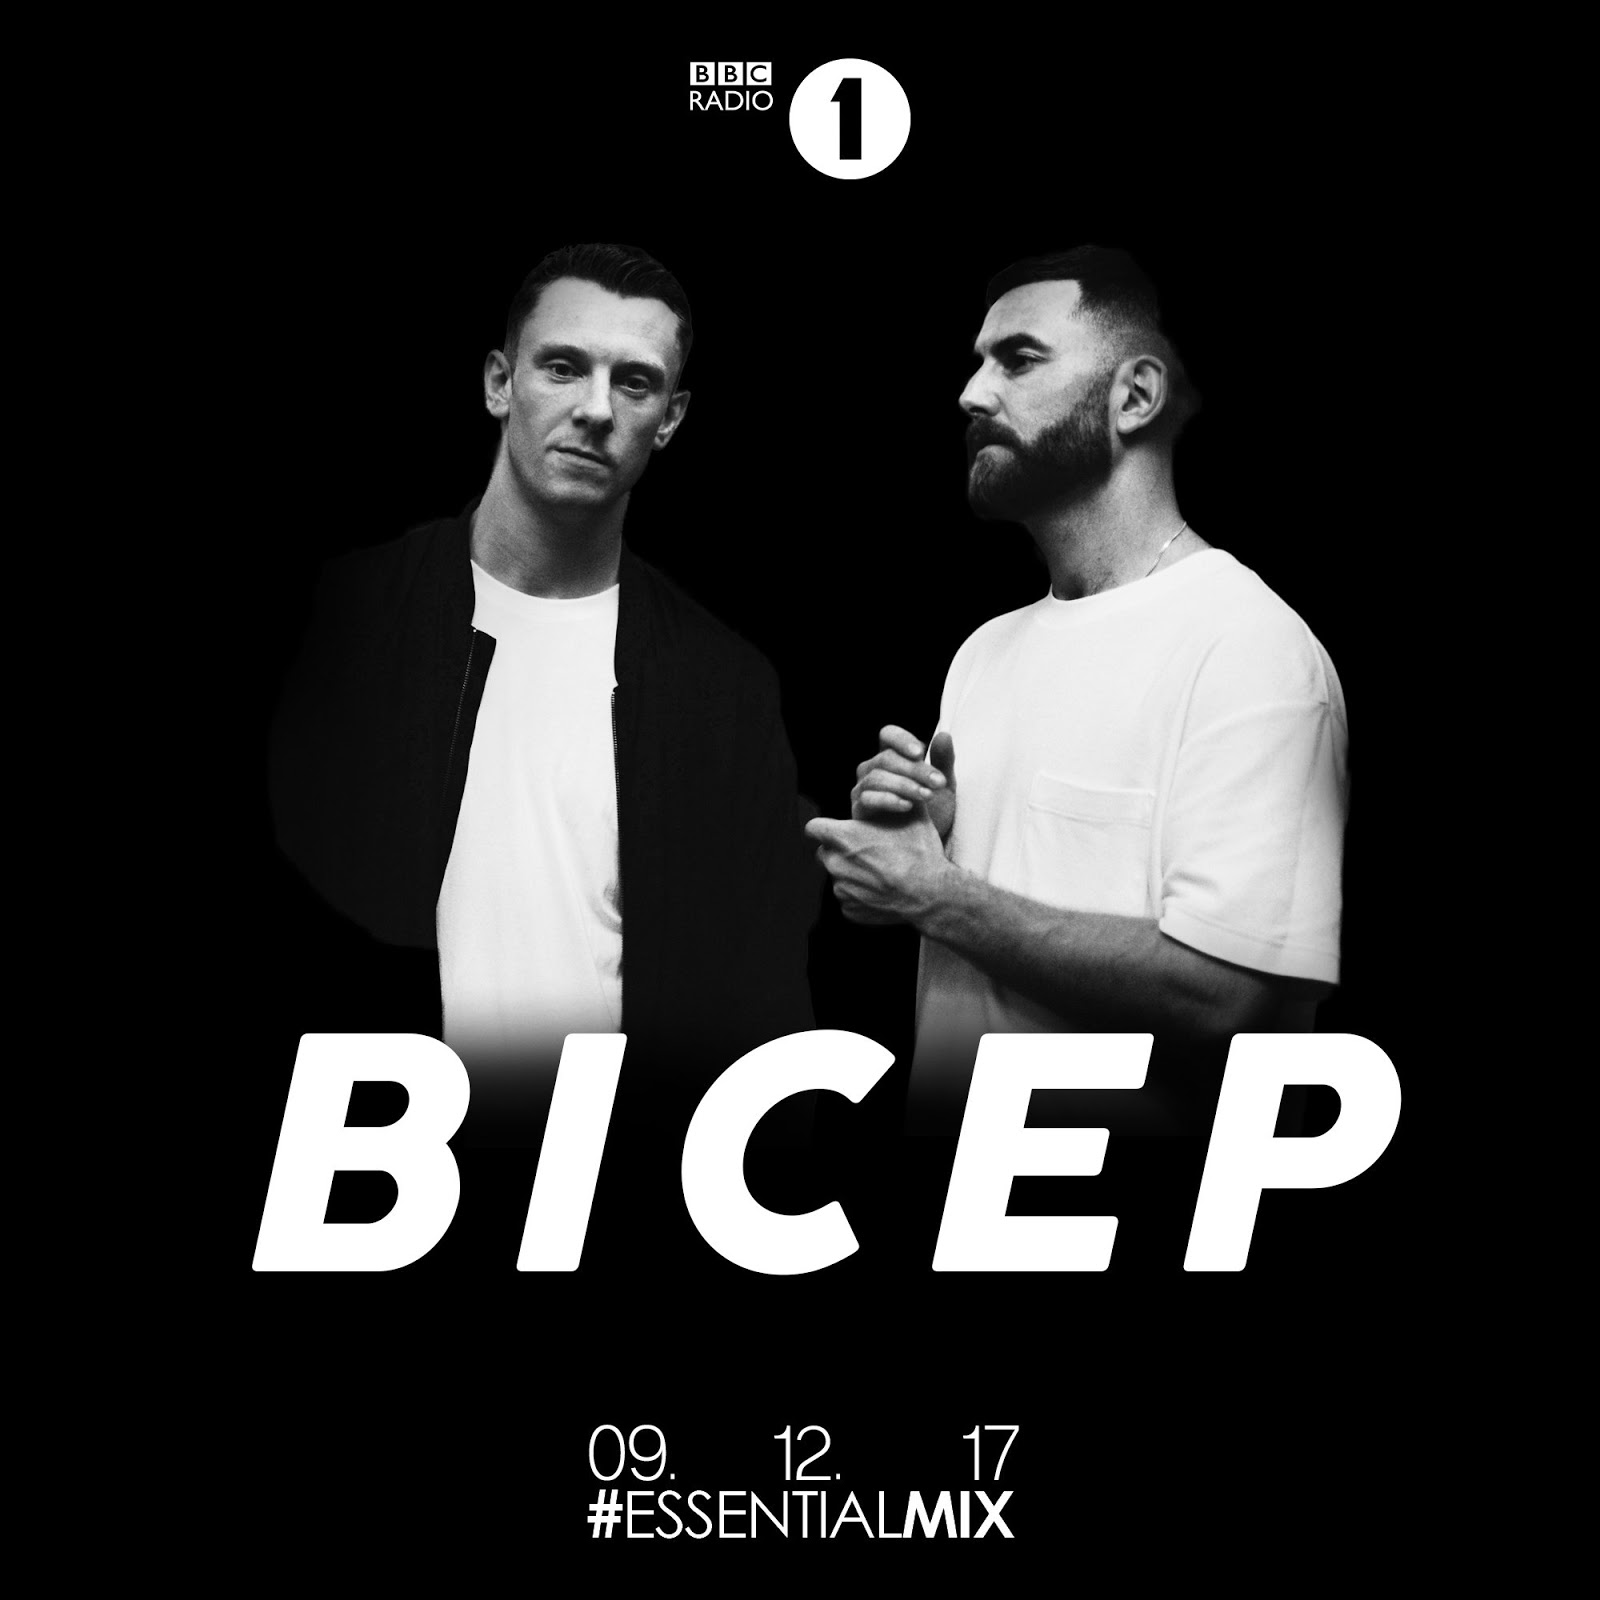 image cover: BICEP Essential Mix BBC Radio 1 2017